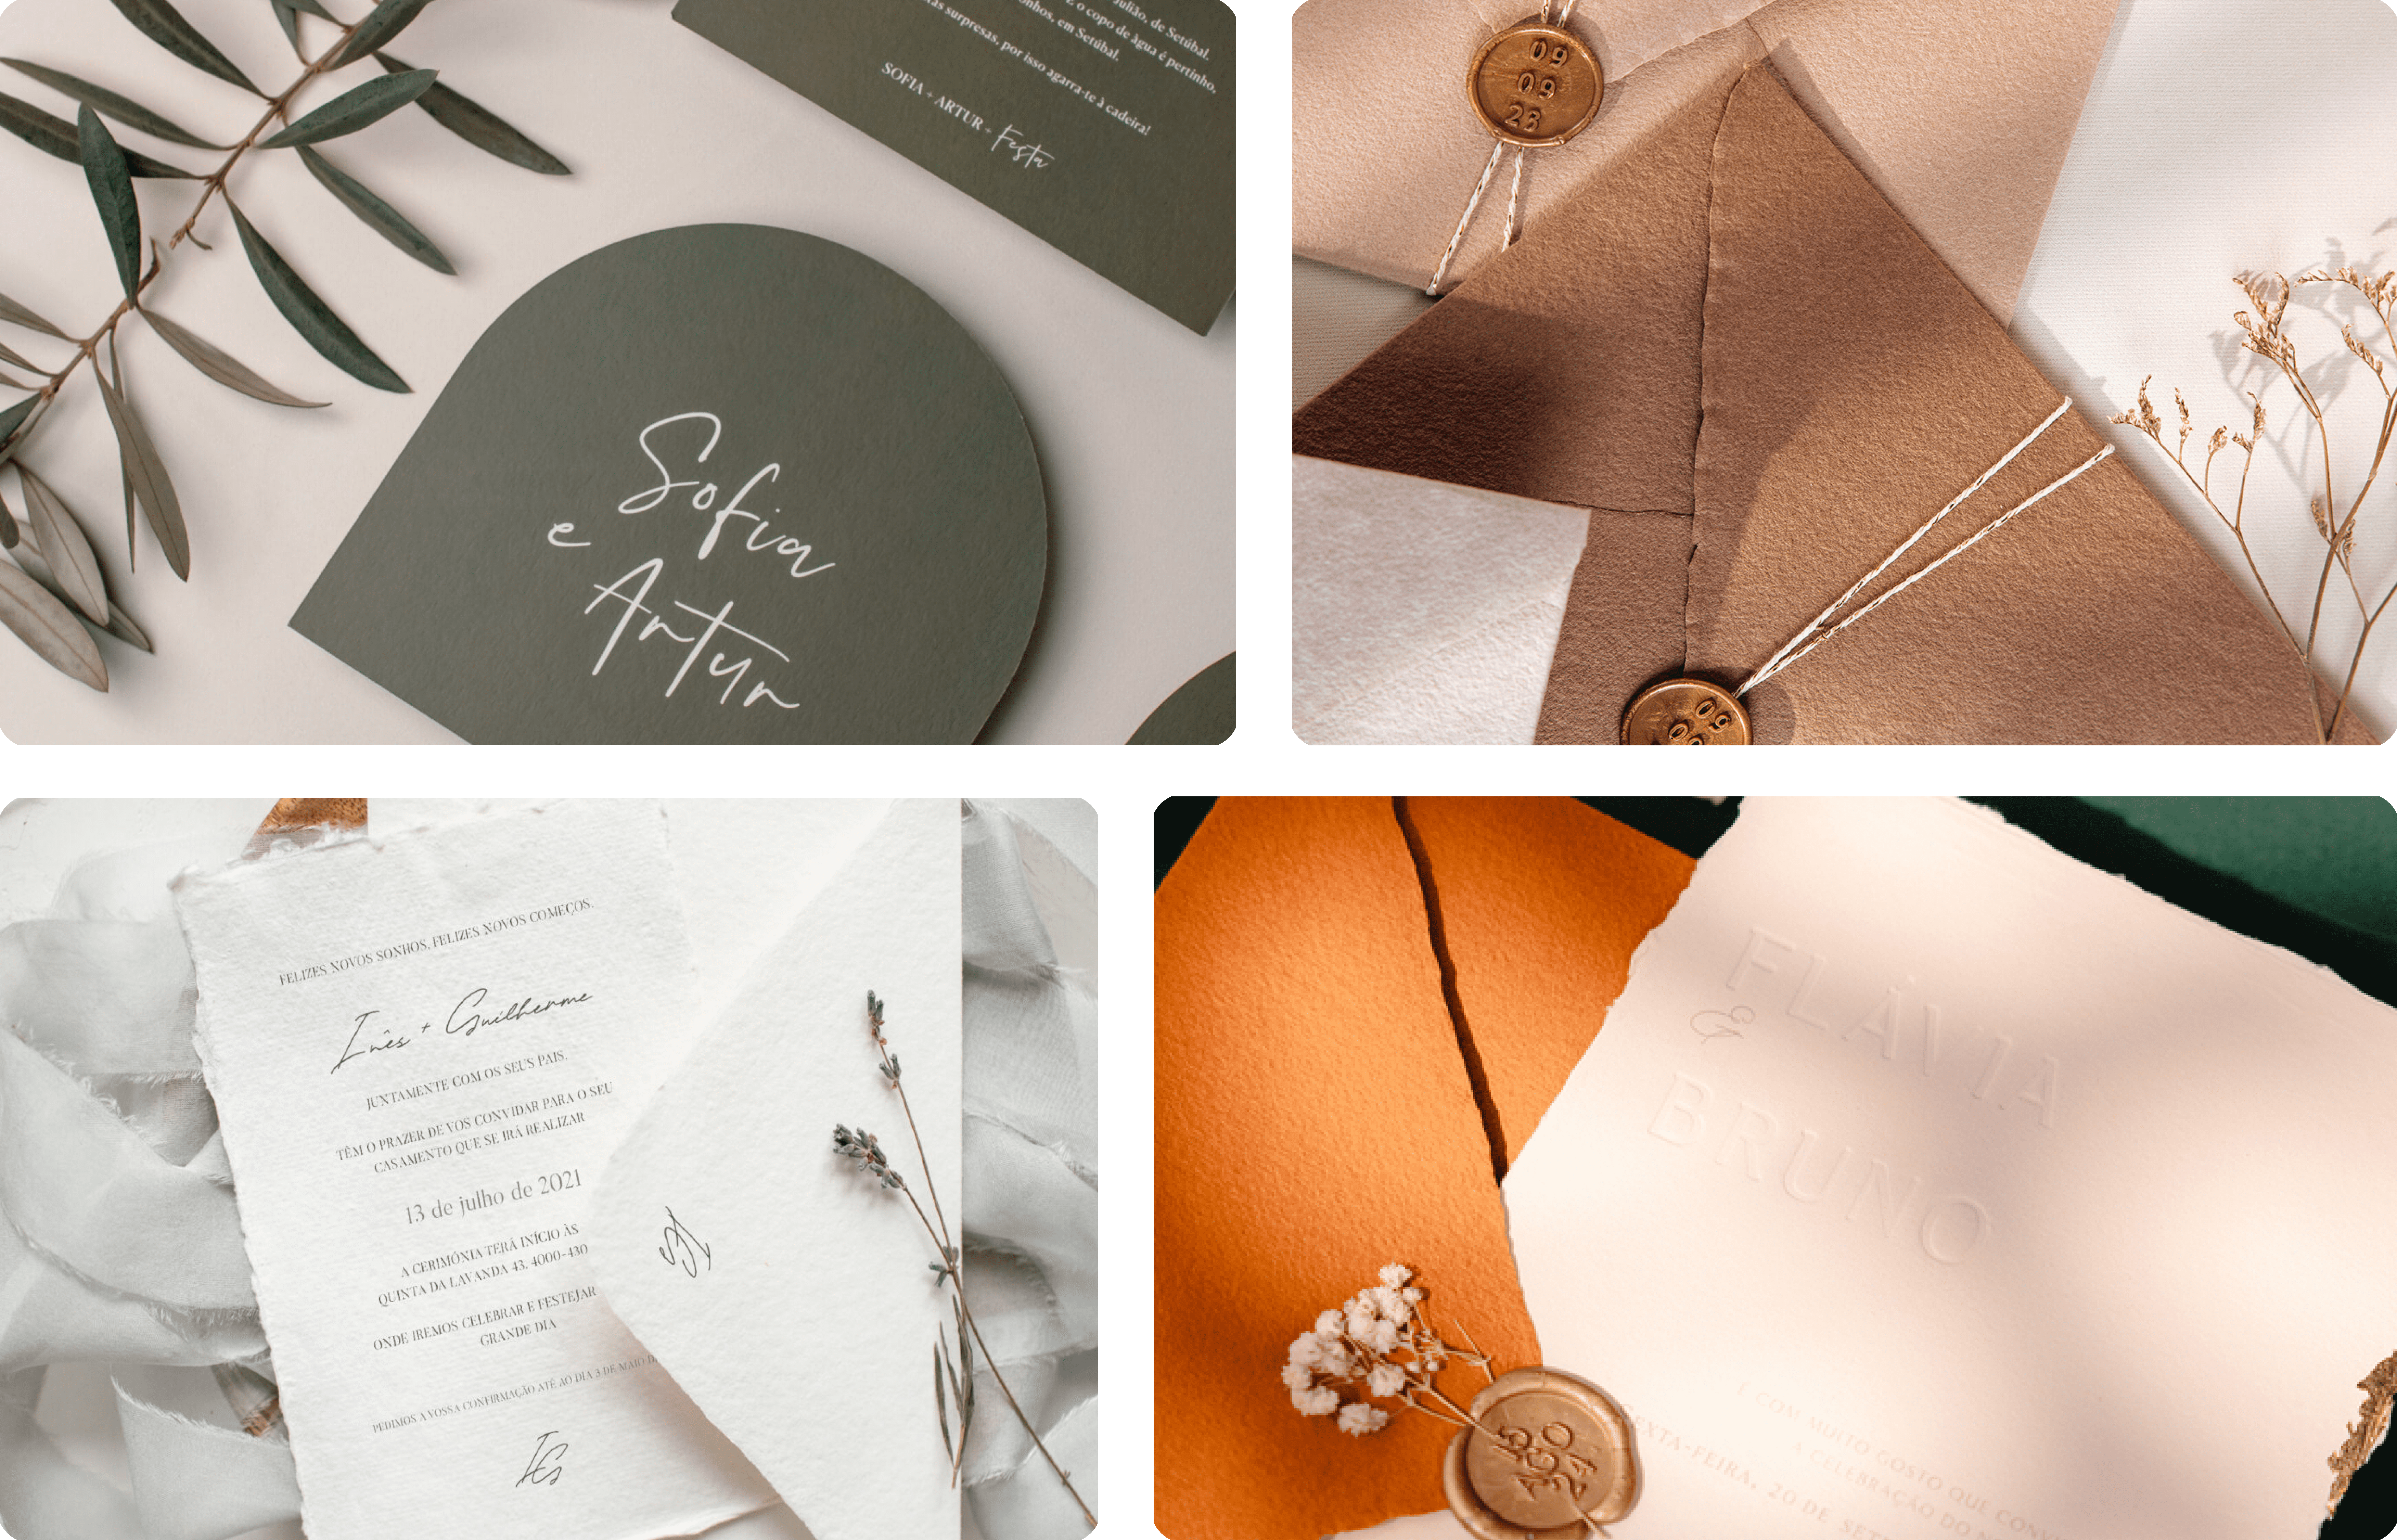 Convites de Casamento Minimalista e envelope em castanho e laranja em papel com lacre dourado e detalhes florais